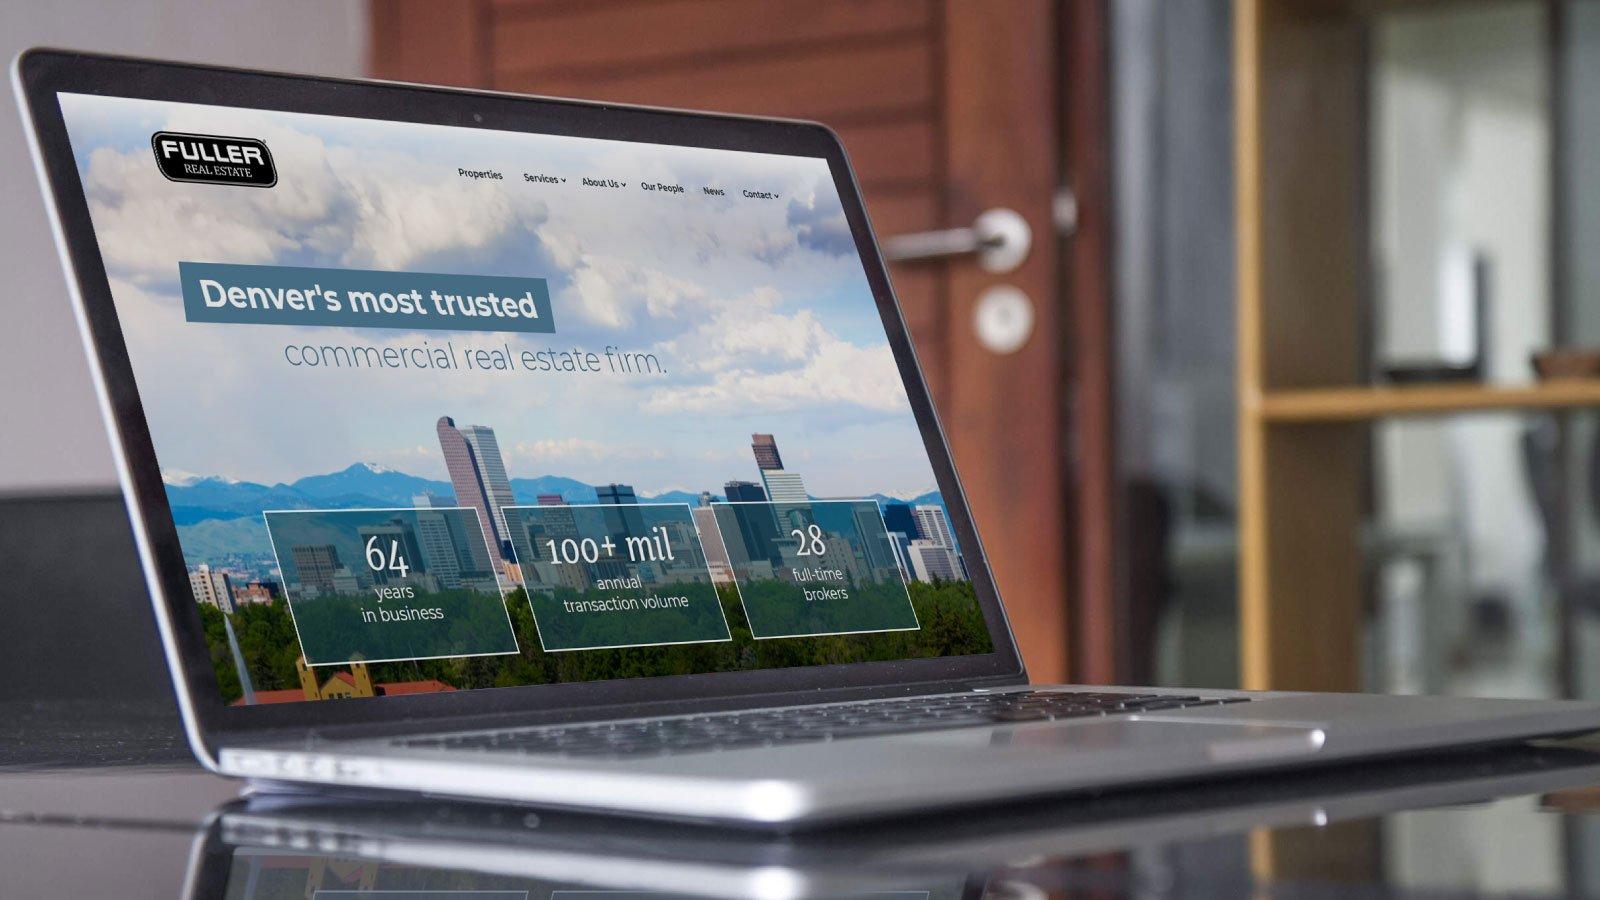 Fuller real estate website on a laptop